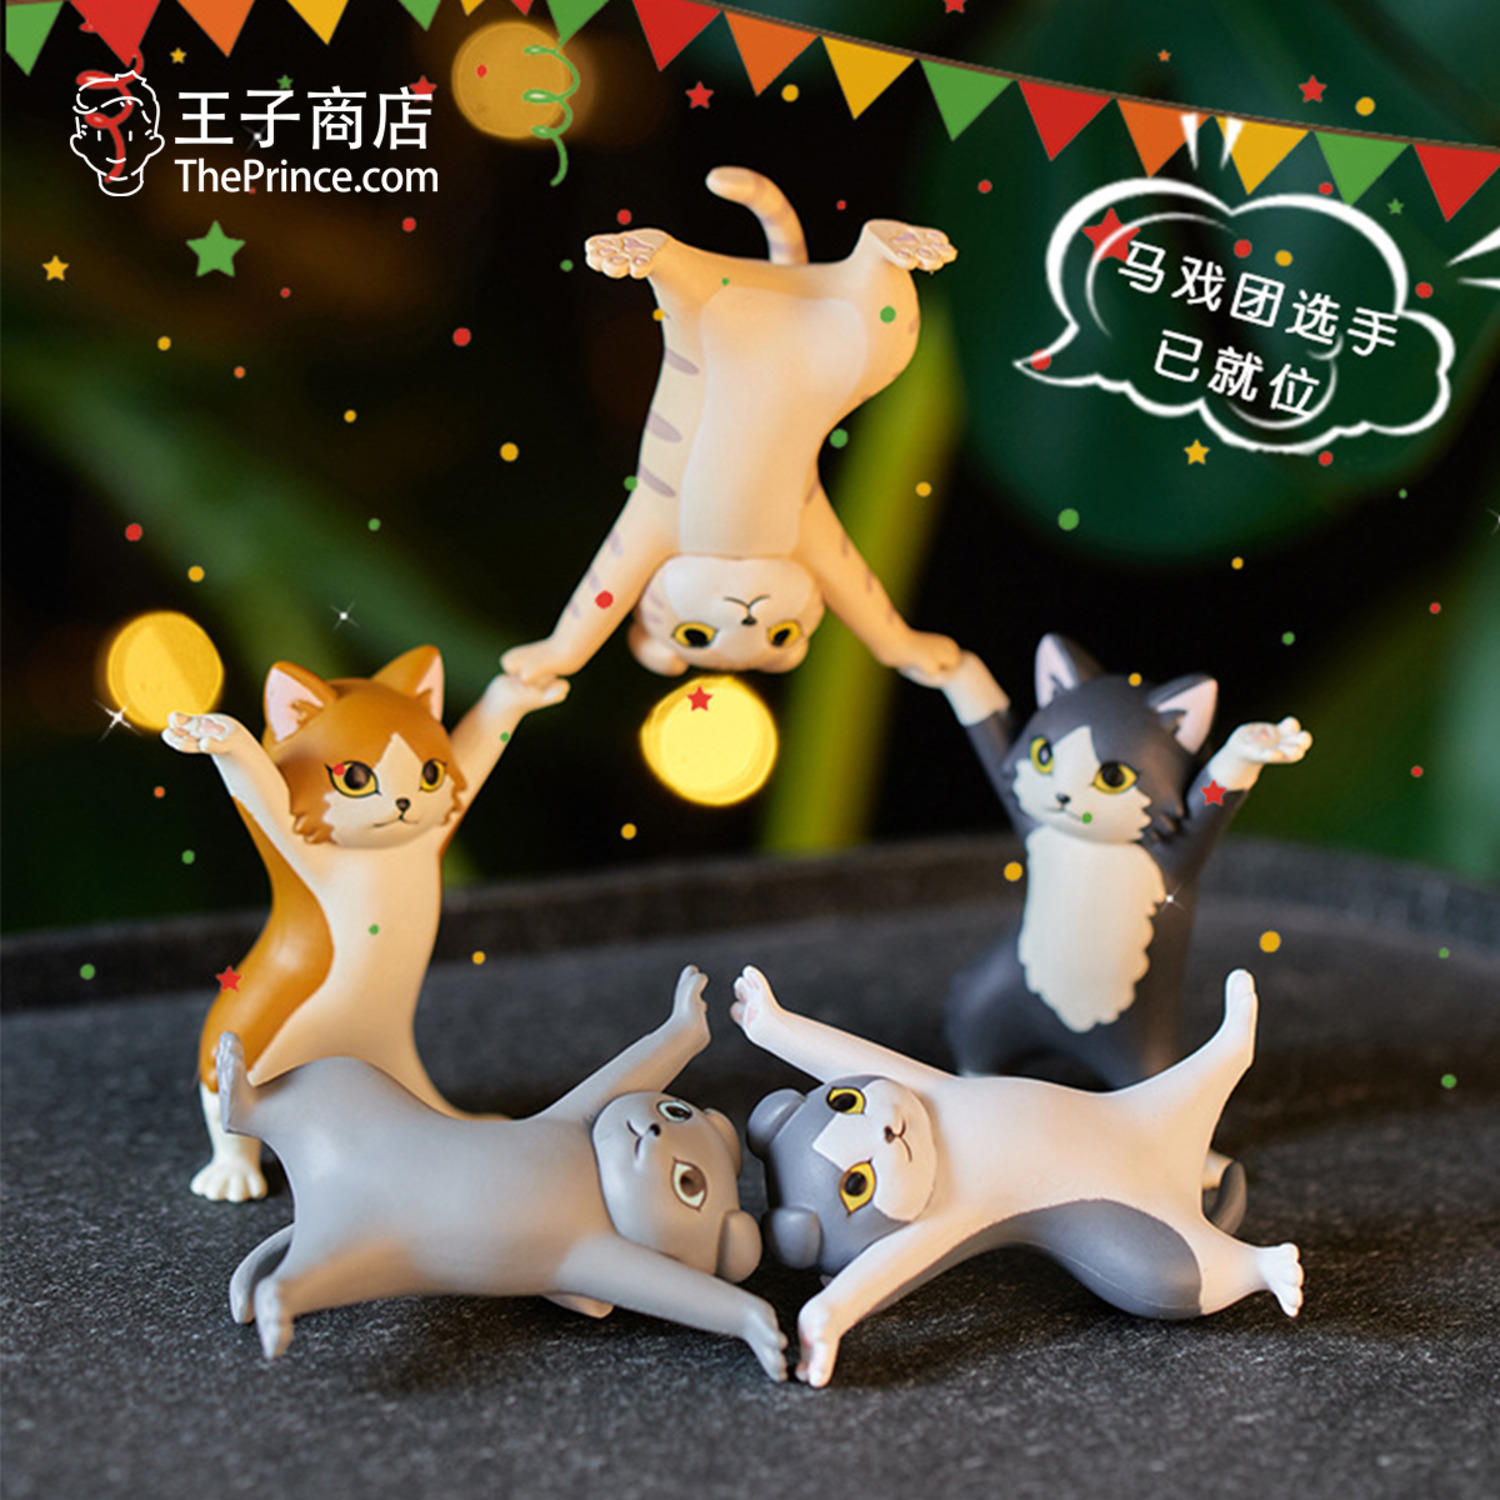 王子商店日本猫咪盲盒置物架妖娆猫猫笔架垂耳长毛猫可爱公仔礼物